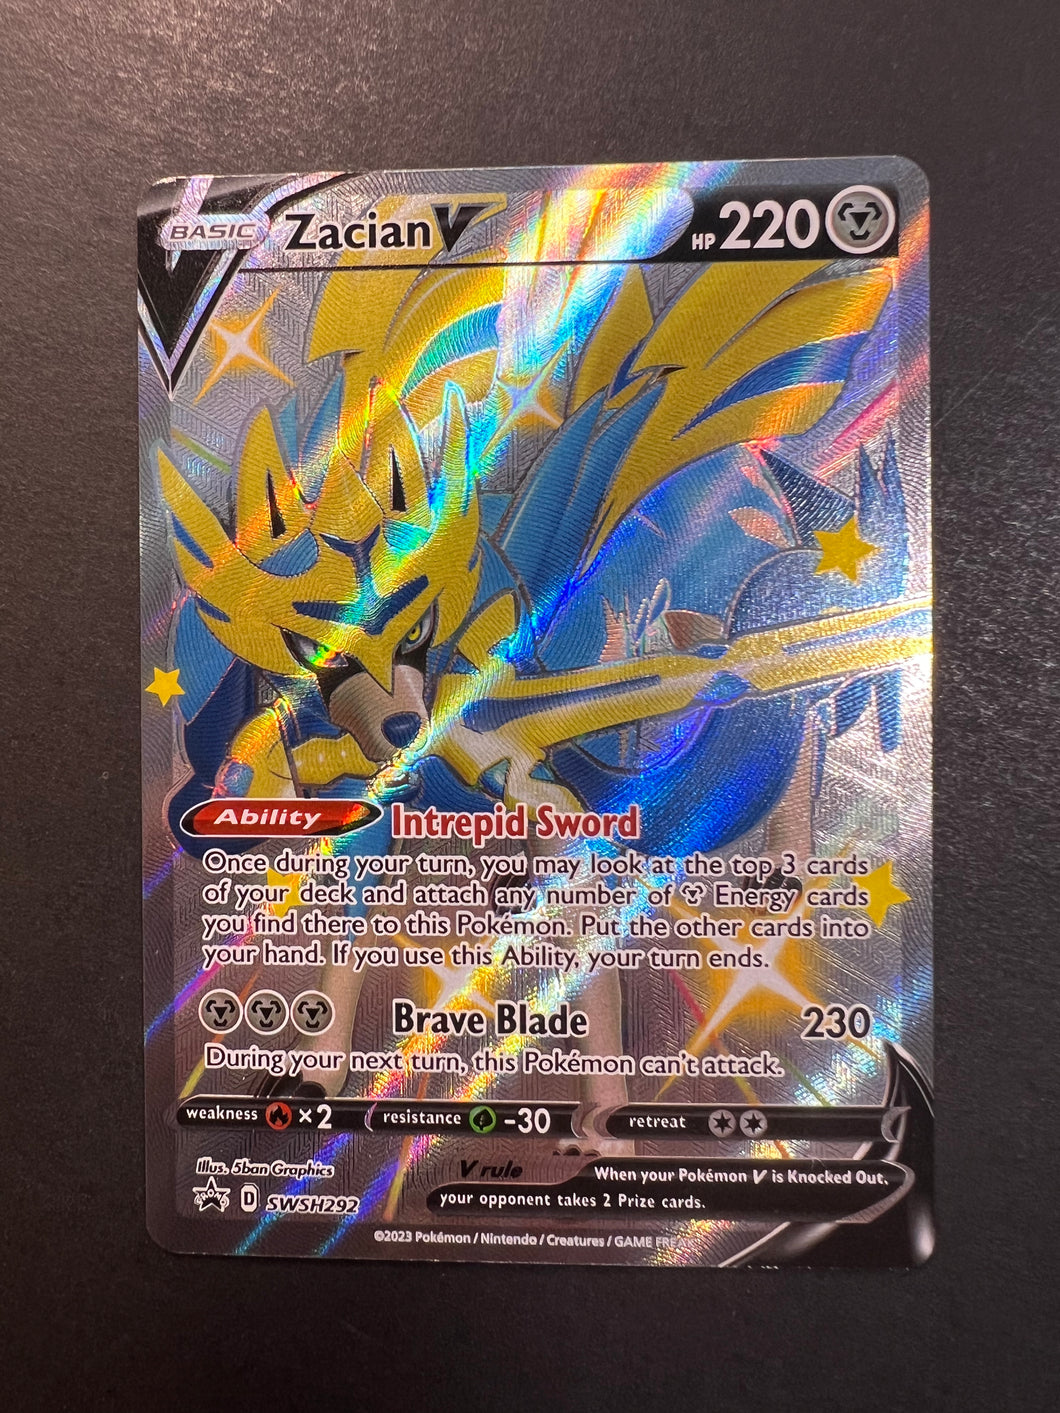  Zacian V & VSTAR - 096/159 - Crown Zenith - Pokemon